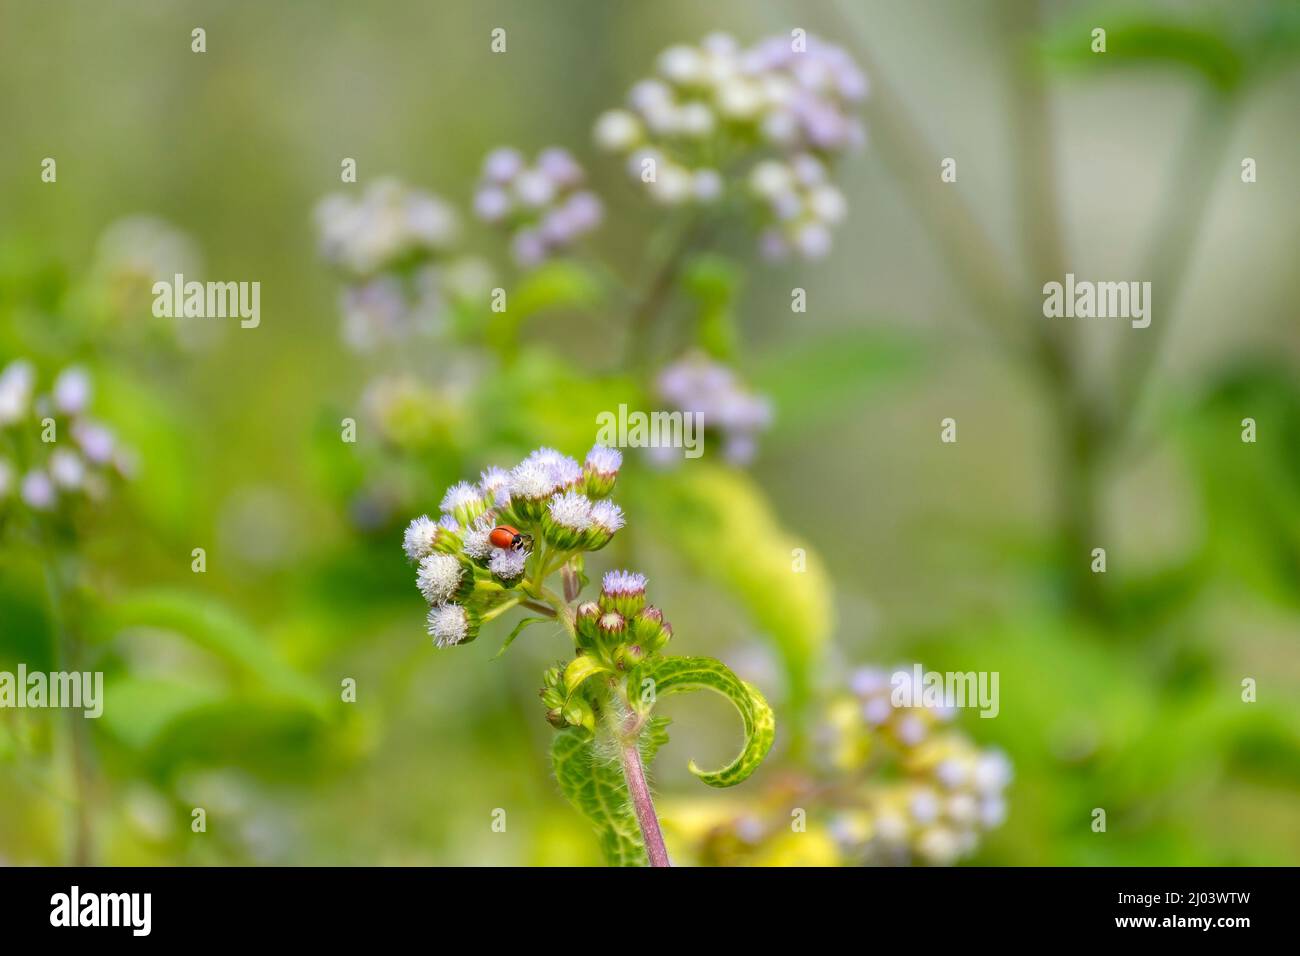 Red Ladybird or Ladybug Beetle, Coccinellidae sitting on Mist flower, Wild Ageraatum or Floss Flower Stock Photo